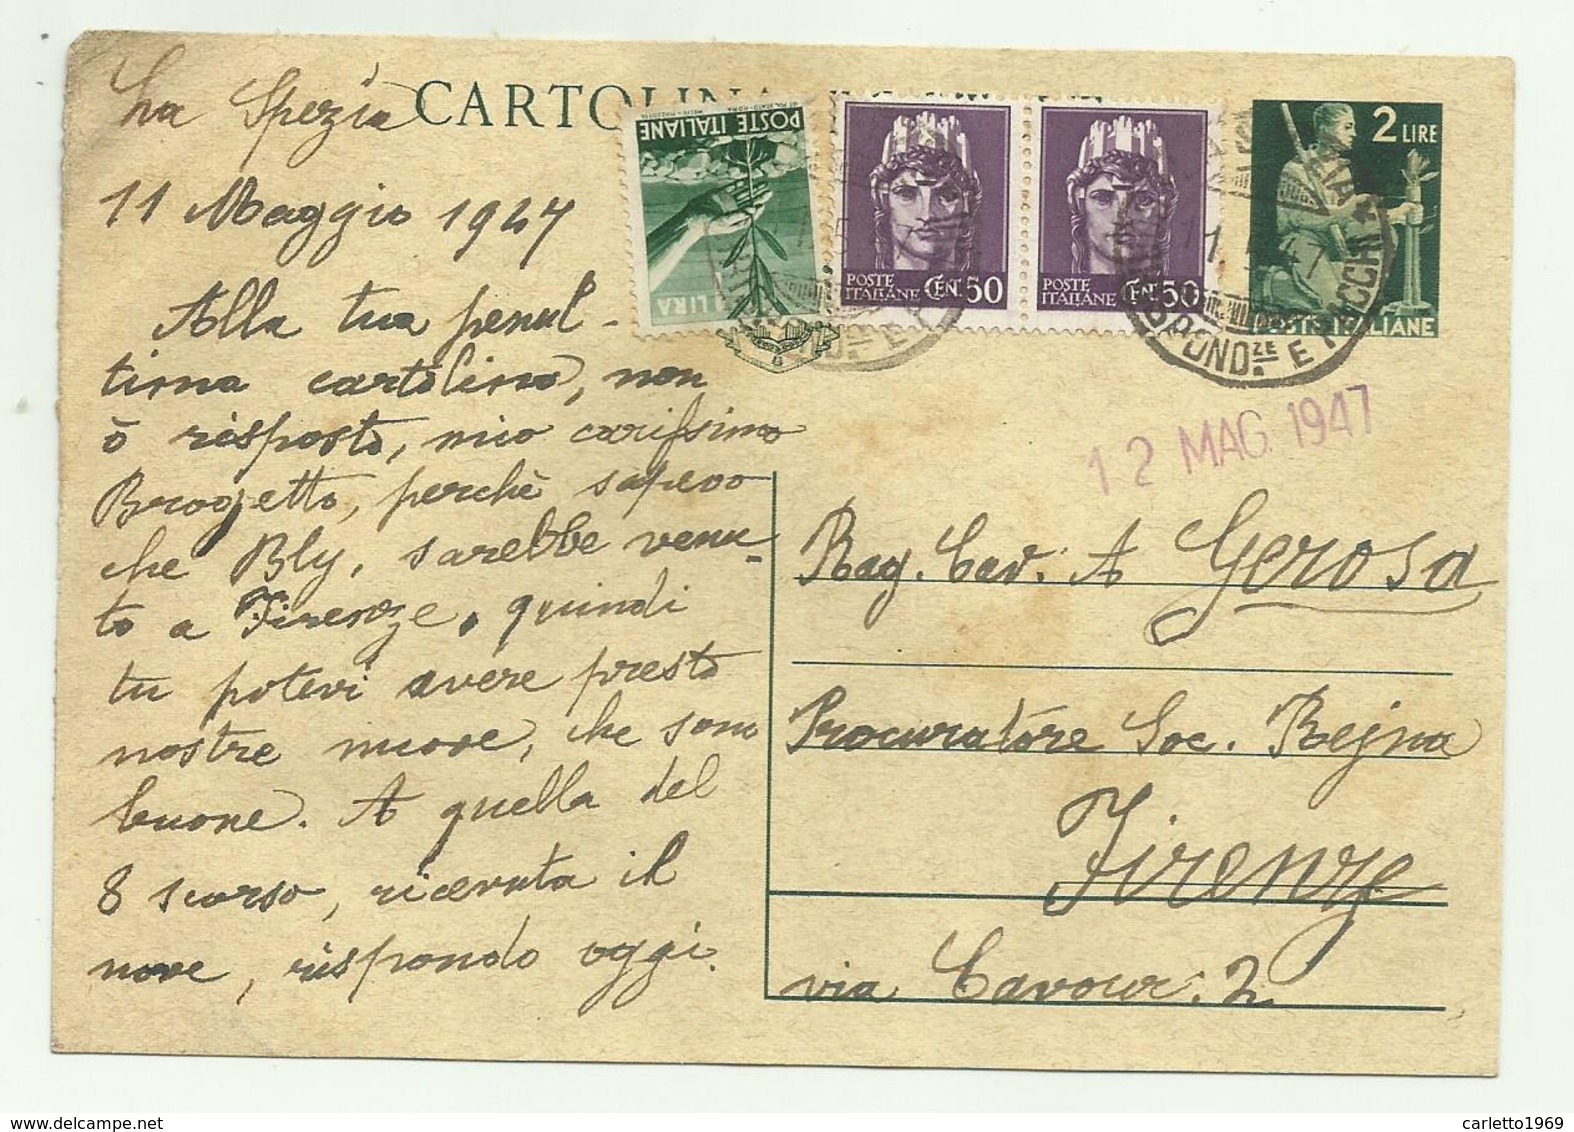 CARTOLINA POSTALE LIRE 2  CON AGGIUNTA DI 1 LIRA E 2 DA CENT. 50 - 1947  FG - Marcophilia